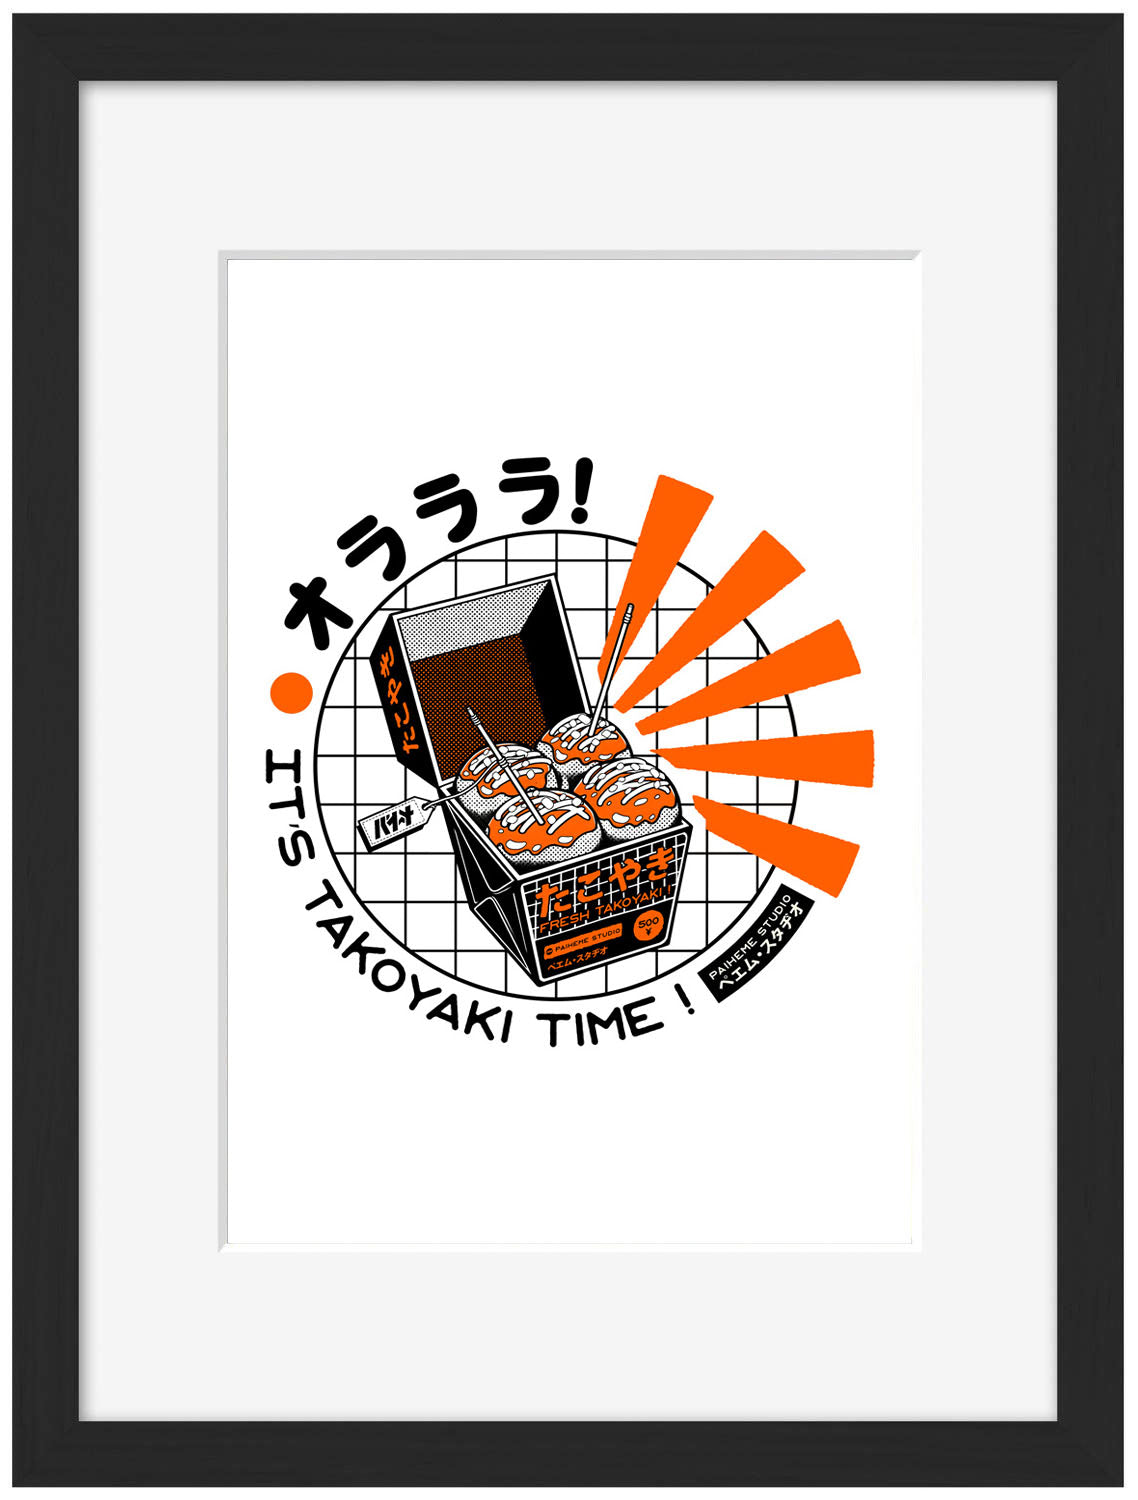 Takoyaki Time-paiheme-studio, print-Framed Print-30 x 40 cm-BLUE SHAKER